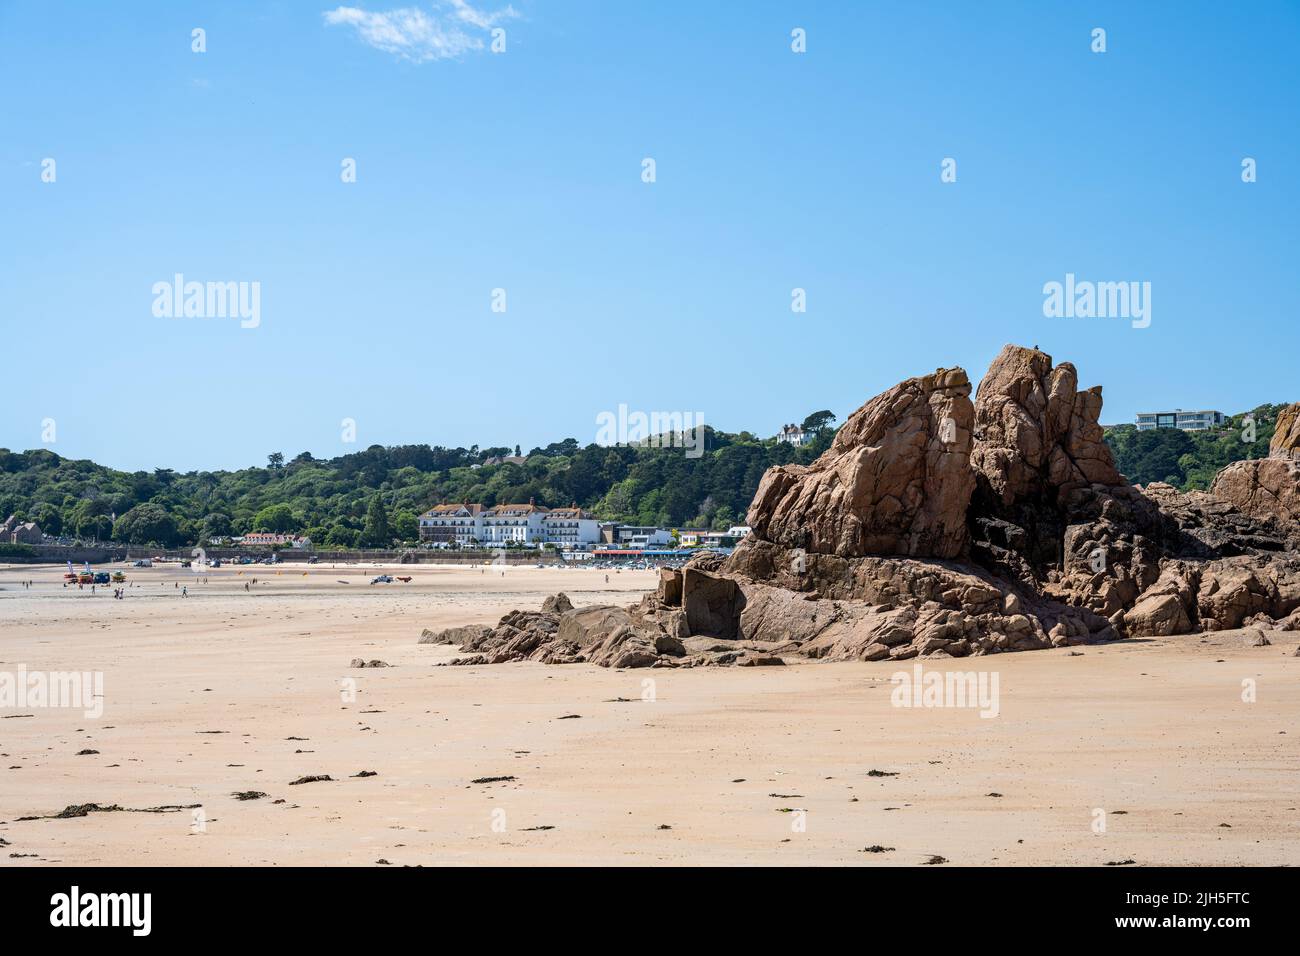 La spiaggia e la costa di St Brelade's Bay, St Brelade nel sud-ovest della dipendenza della Corona britannica di Jersey, Isole del canale, Isole britanniche. Foto Stock